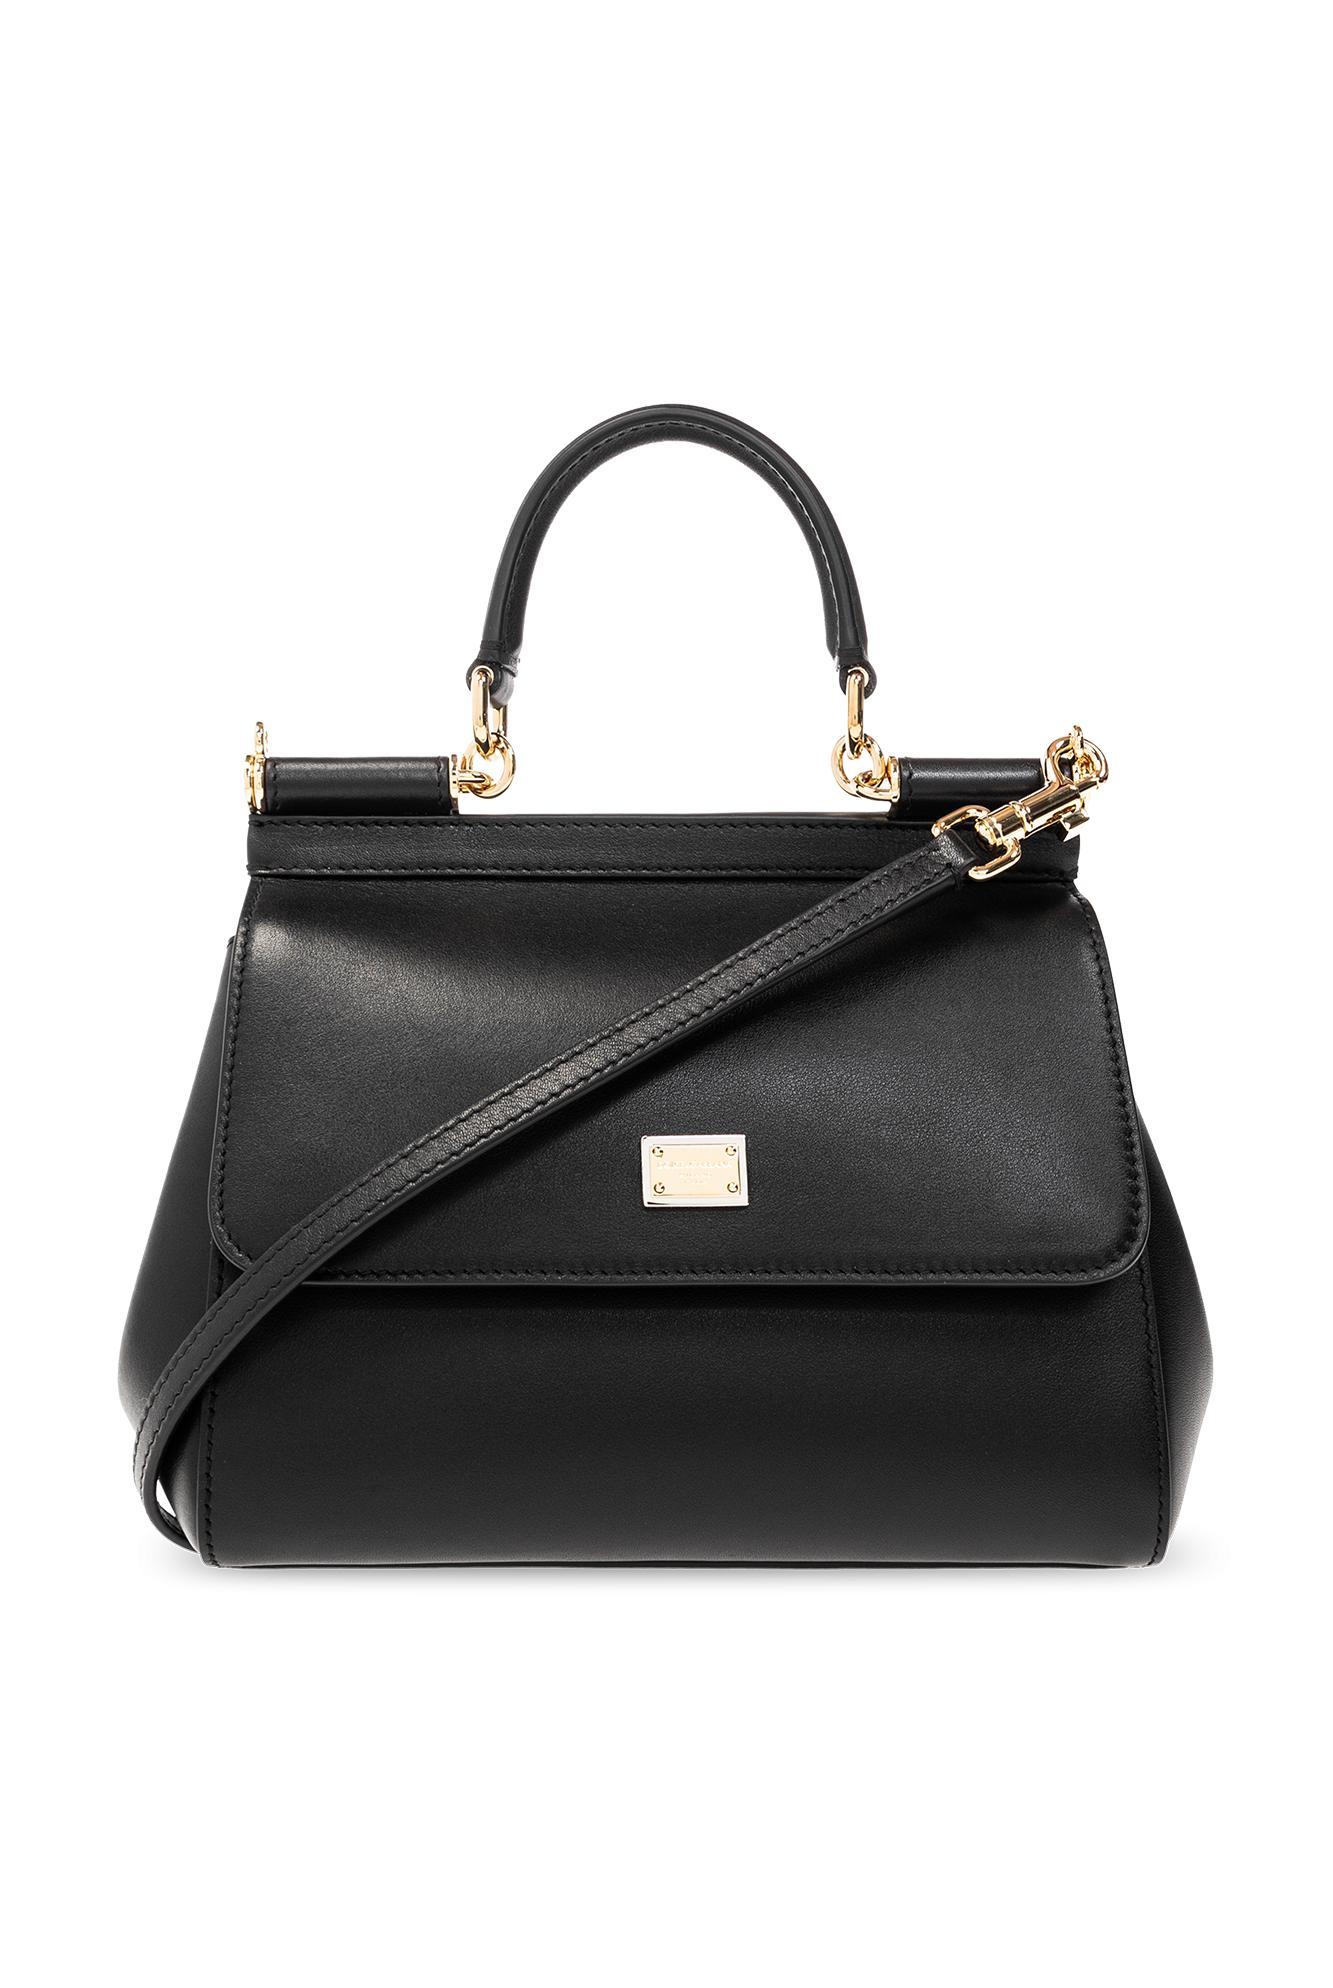 Dolce & Gabbana 'sicily Medium' Shoulder Bag in Black